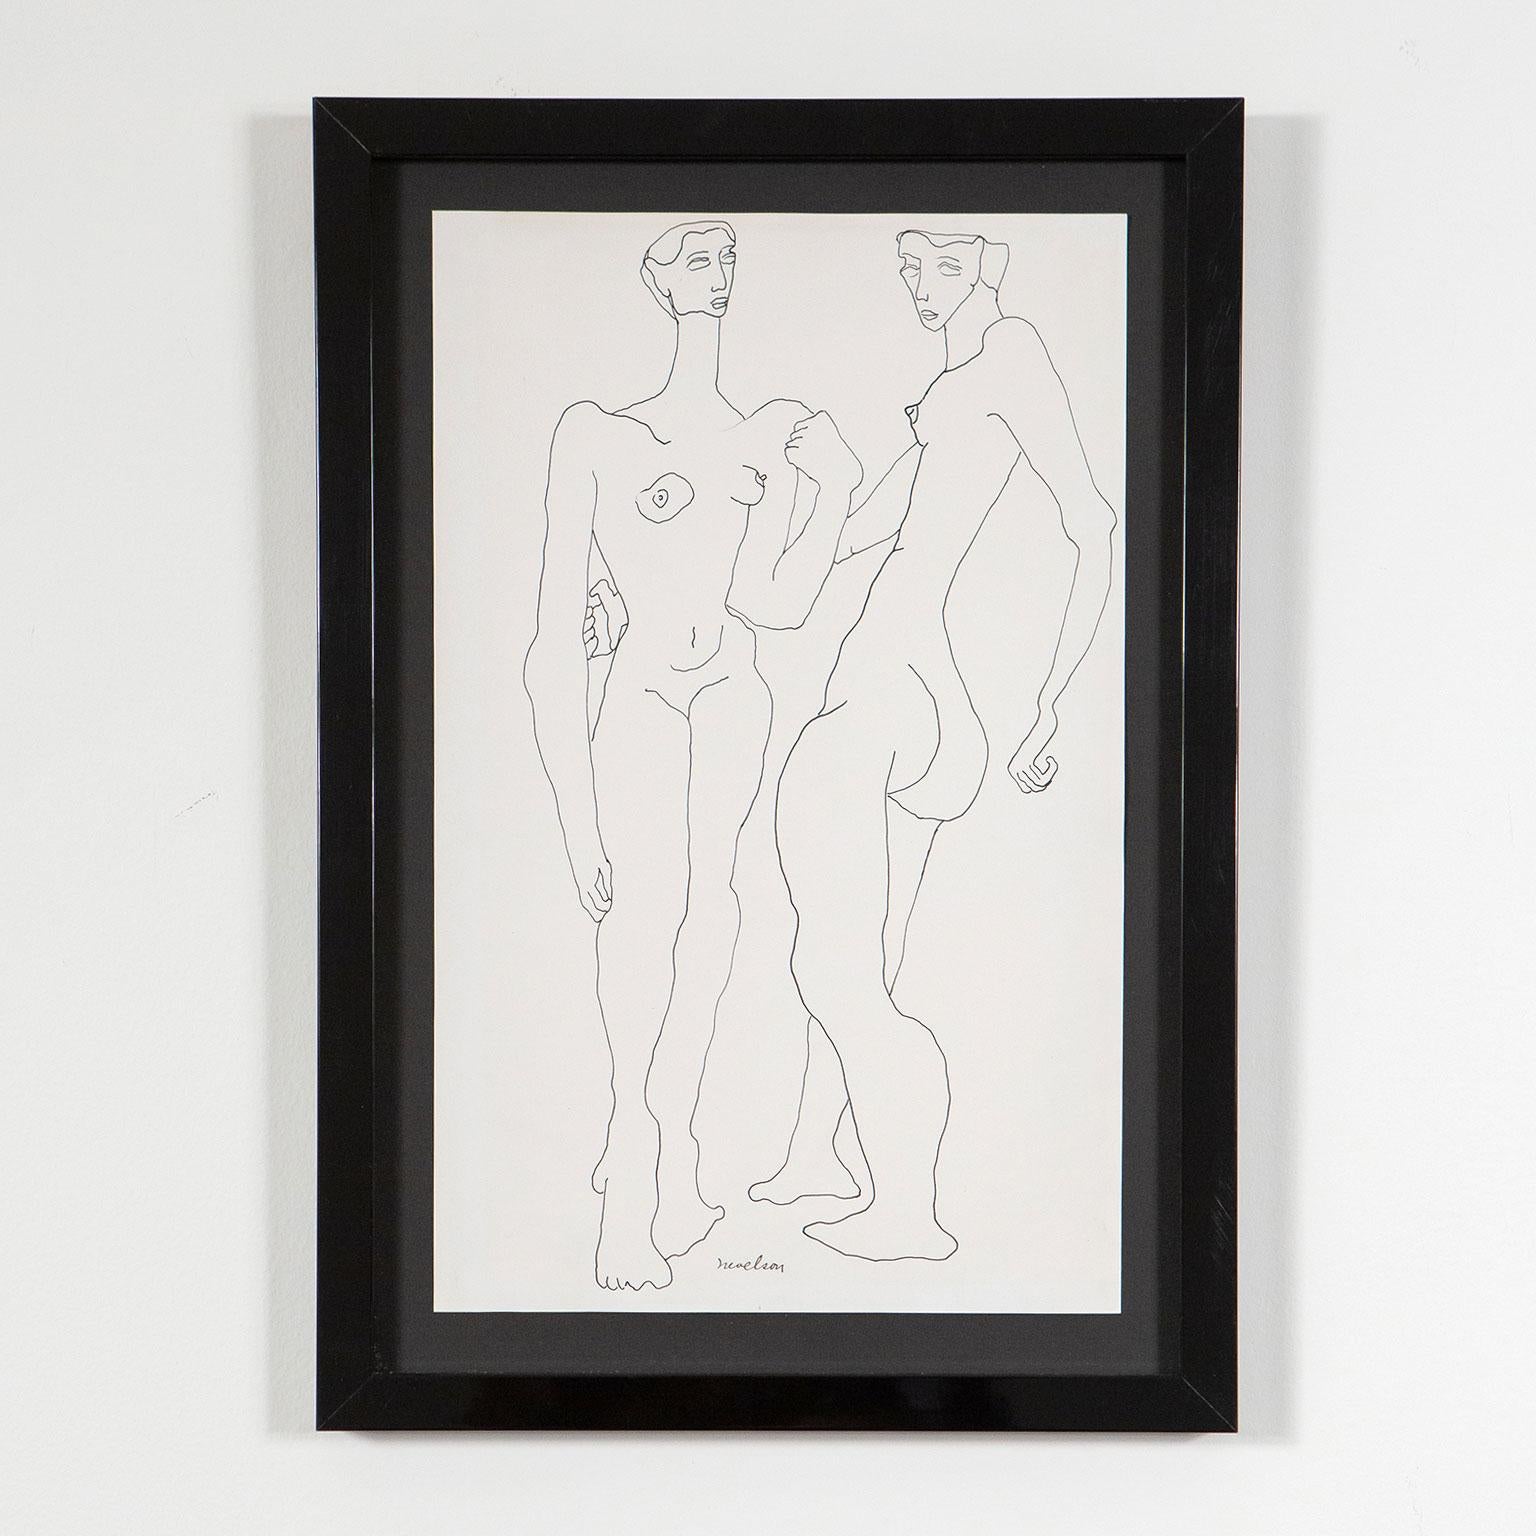 Deux nus, États-Unis, vers les années 1930  Signé à l'encre par l'artiste  Le stylo et l'encre sur papier - Art de Louise Nevelson